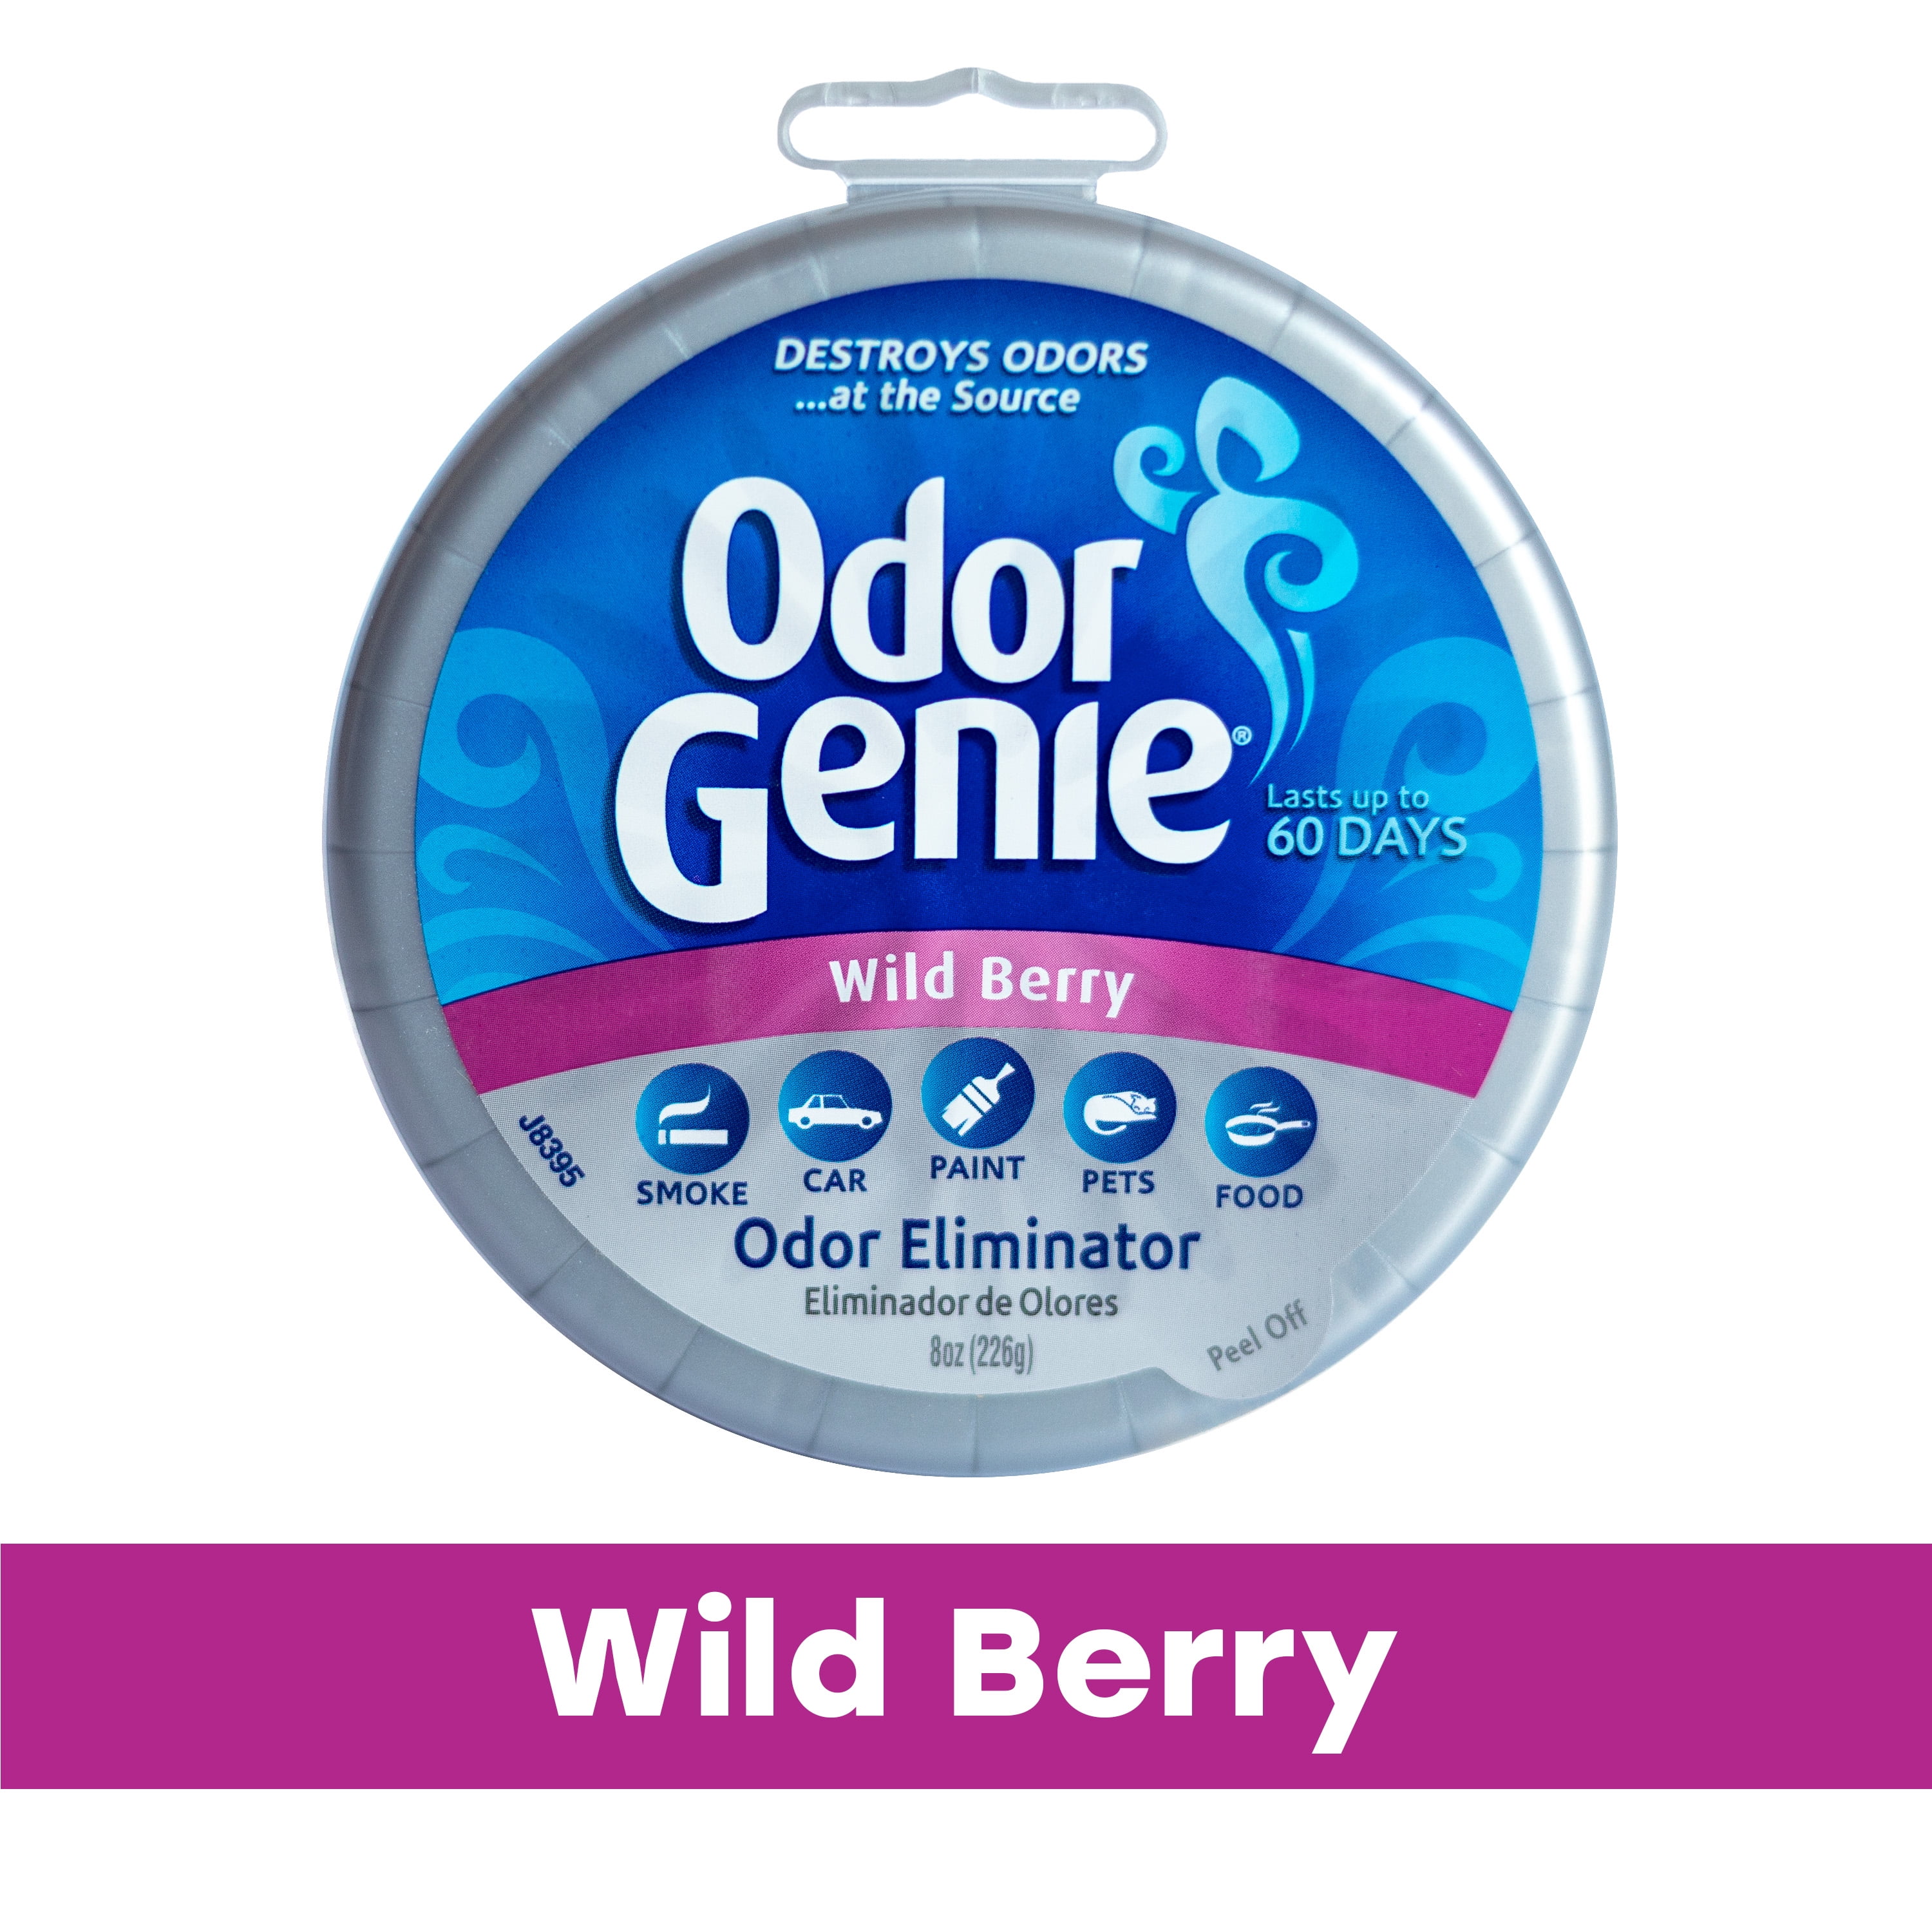 Odor Genie Odor Eliminator with Wild Berry Fragrance, 8 oz.